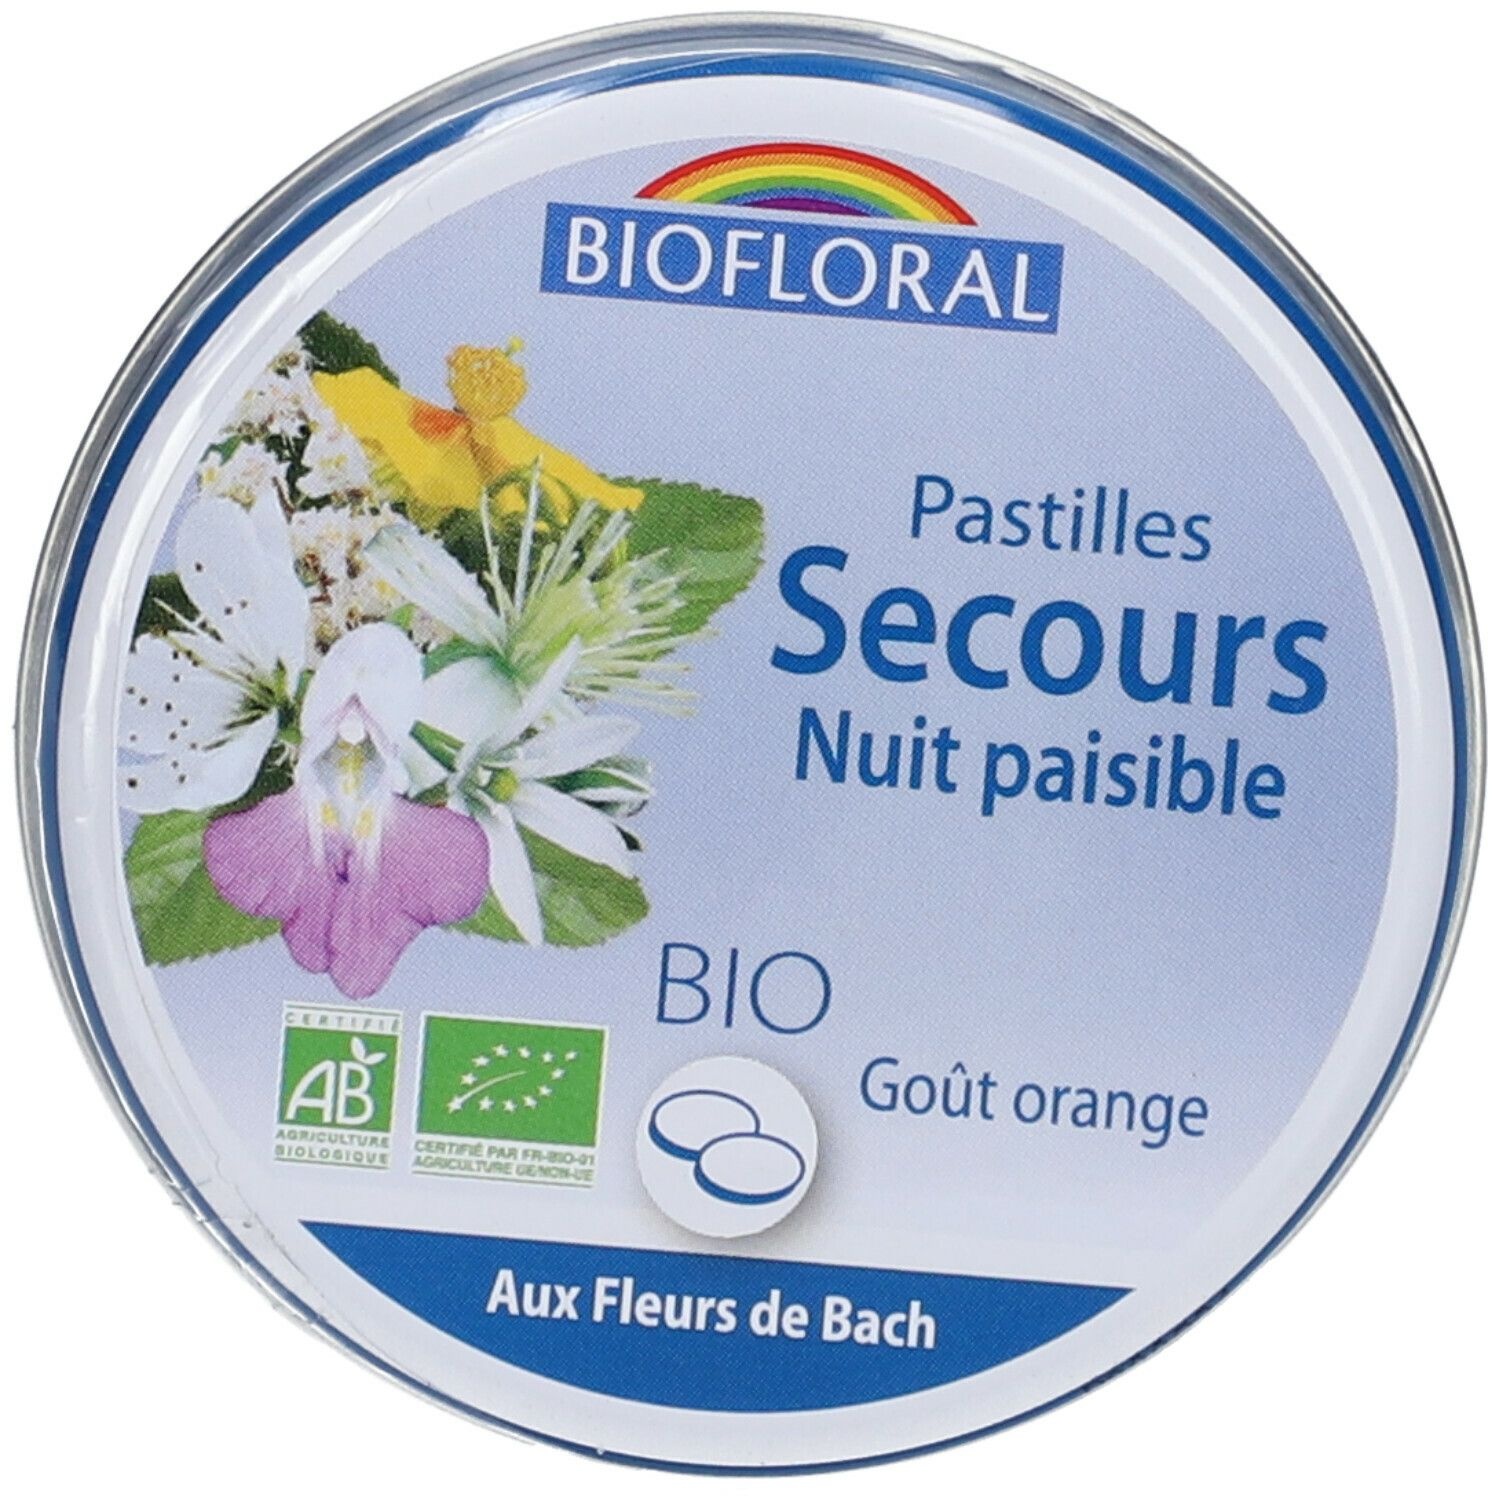 BIOFLORAL Pastilles Secours Nuit Paisible BIO 50 g pastille(s)